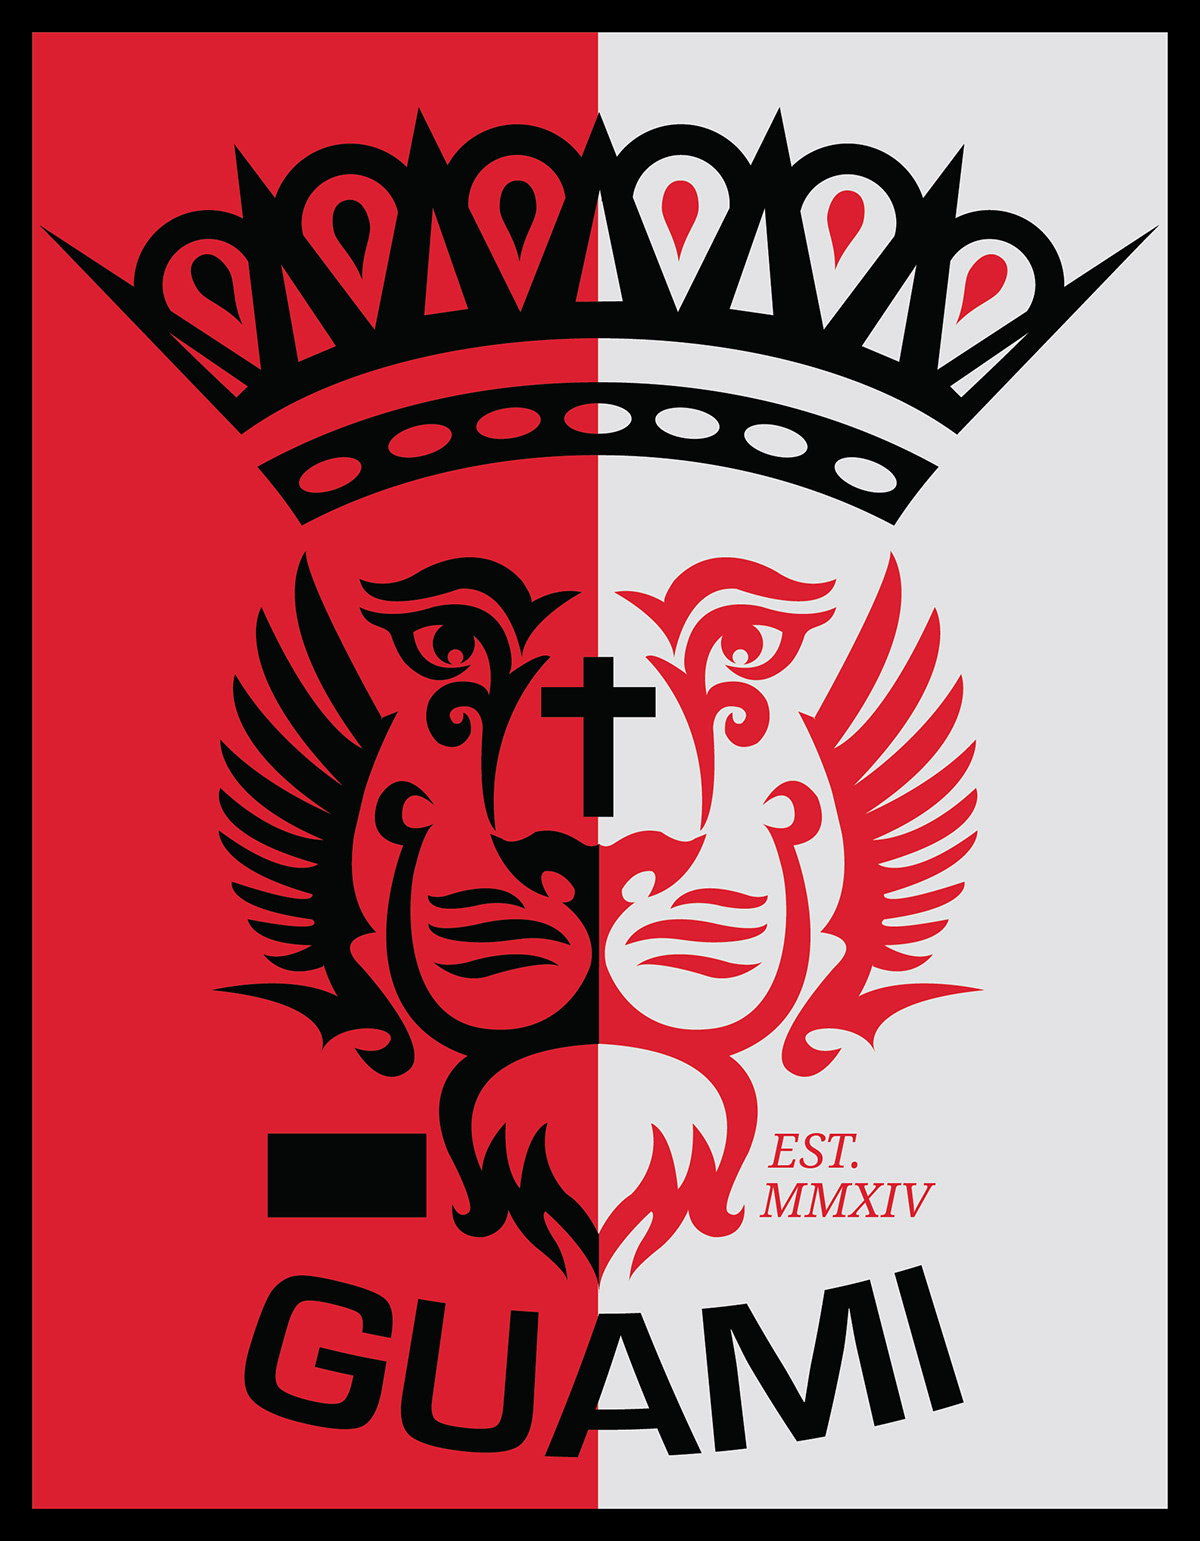 GUAMI Clothing apparel 2014  G.U.A.M.I G.U.A.M.I